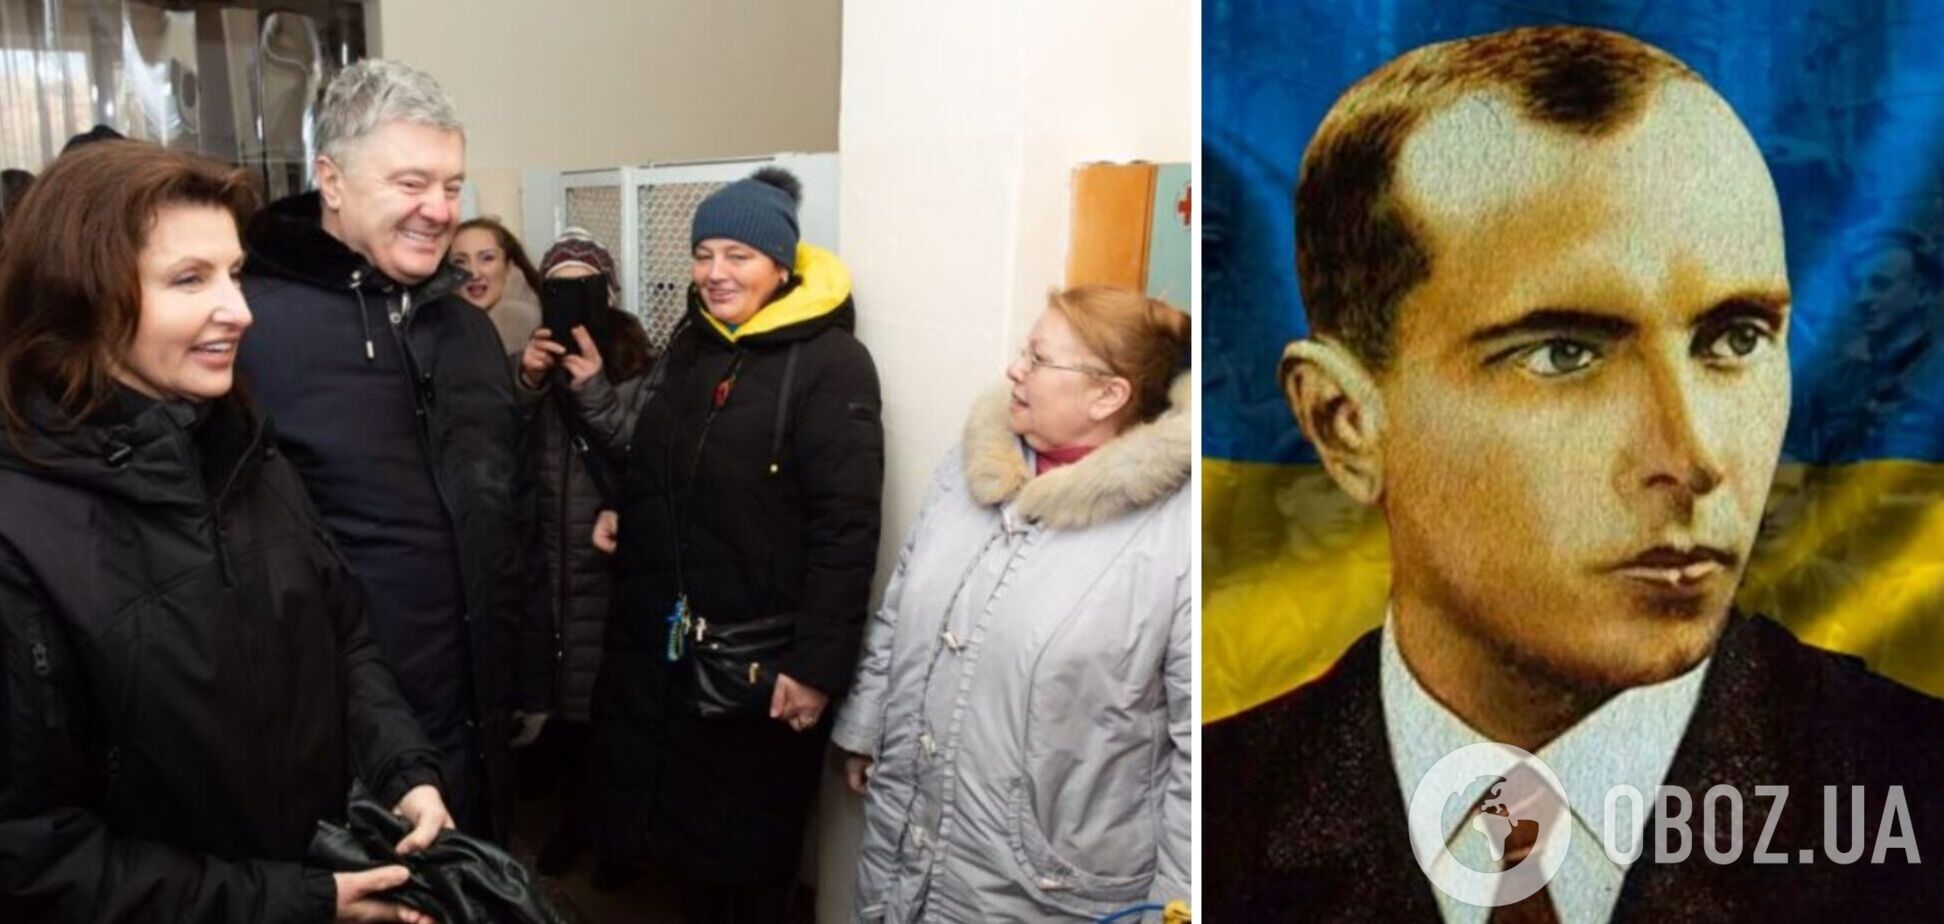 'Все, что нужно знать об украинском единстве': Порошенко в Херсоне спел 'Батько наш Бандера' с волонтерами